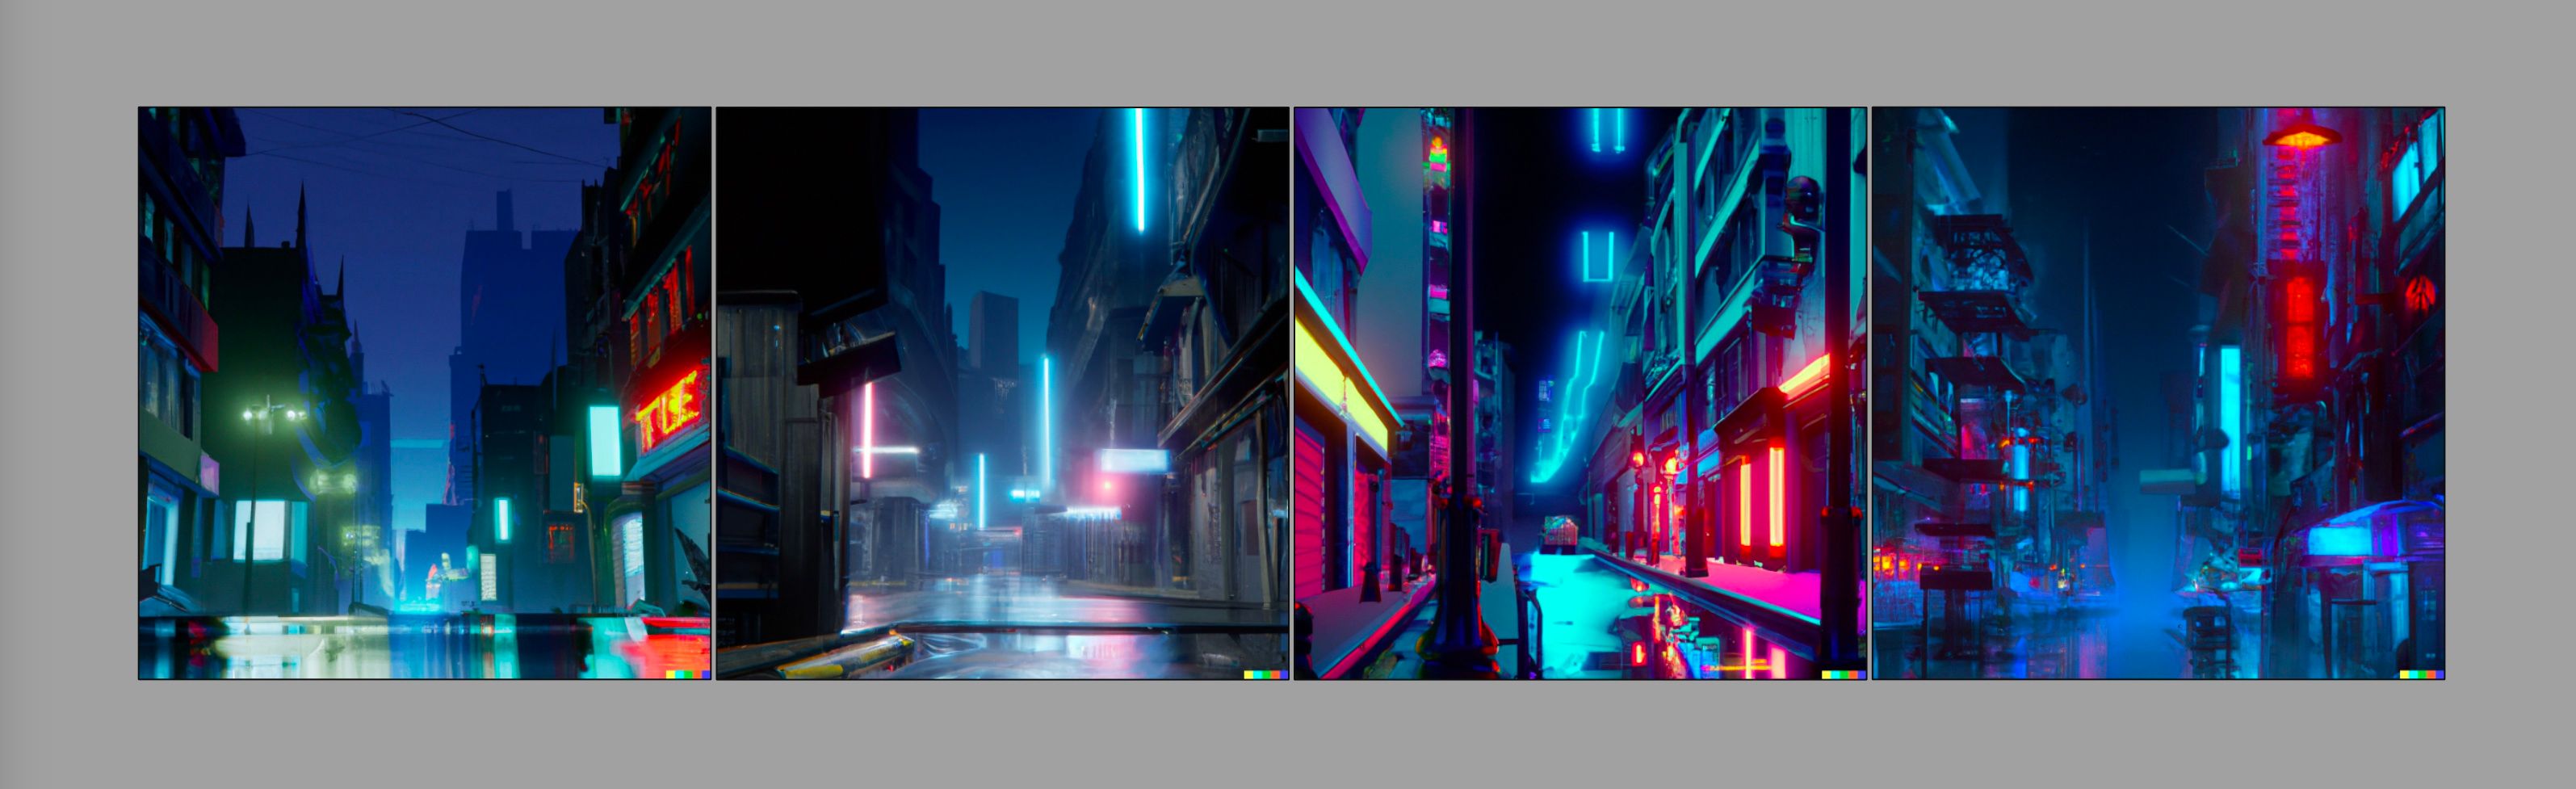 Quatro imagens de uma rua da cidade estilo cyberpunk, geradas com Dall-E